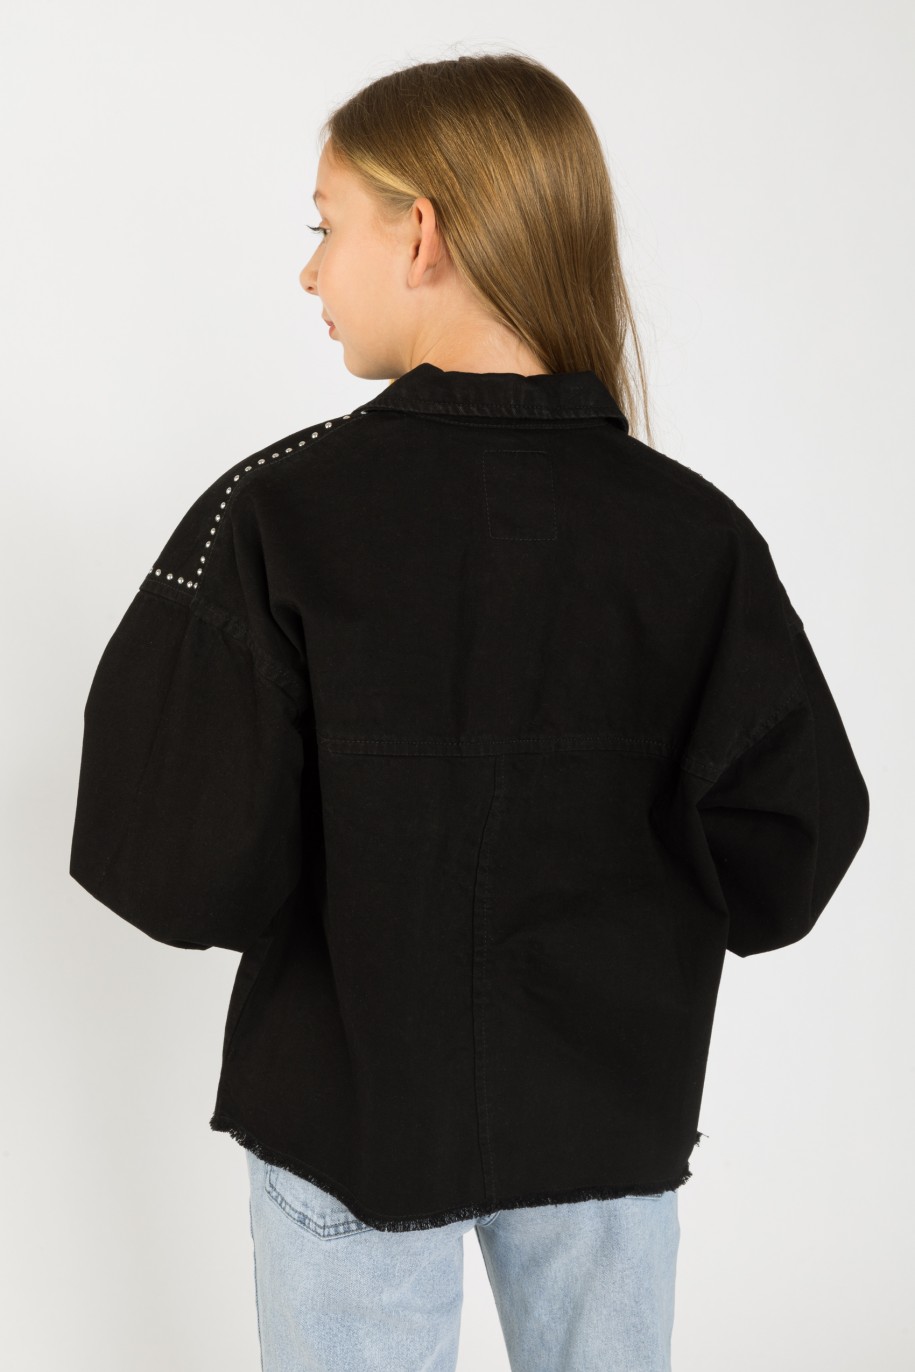 Czarna jeansowa kurtka przejściowa z ozdobnymi nitami - 33182